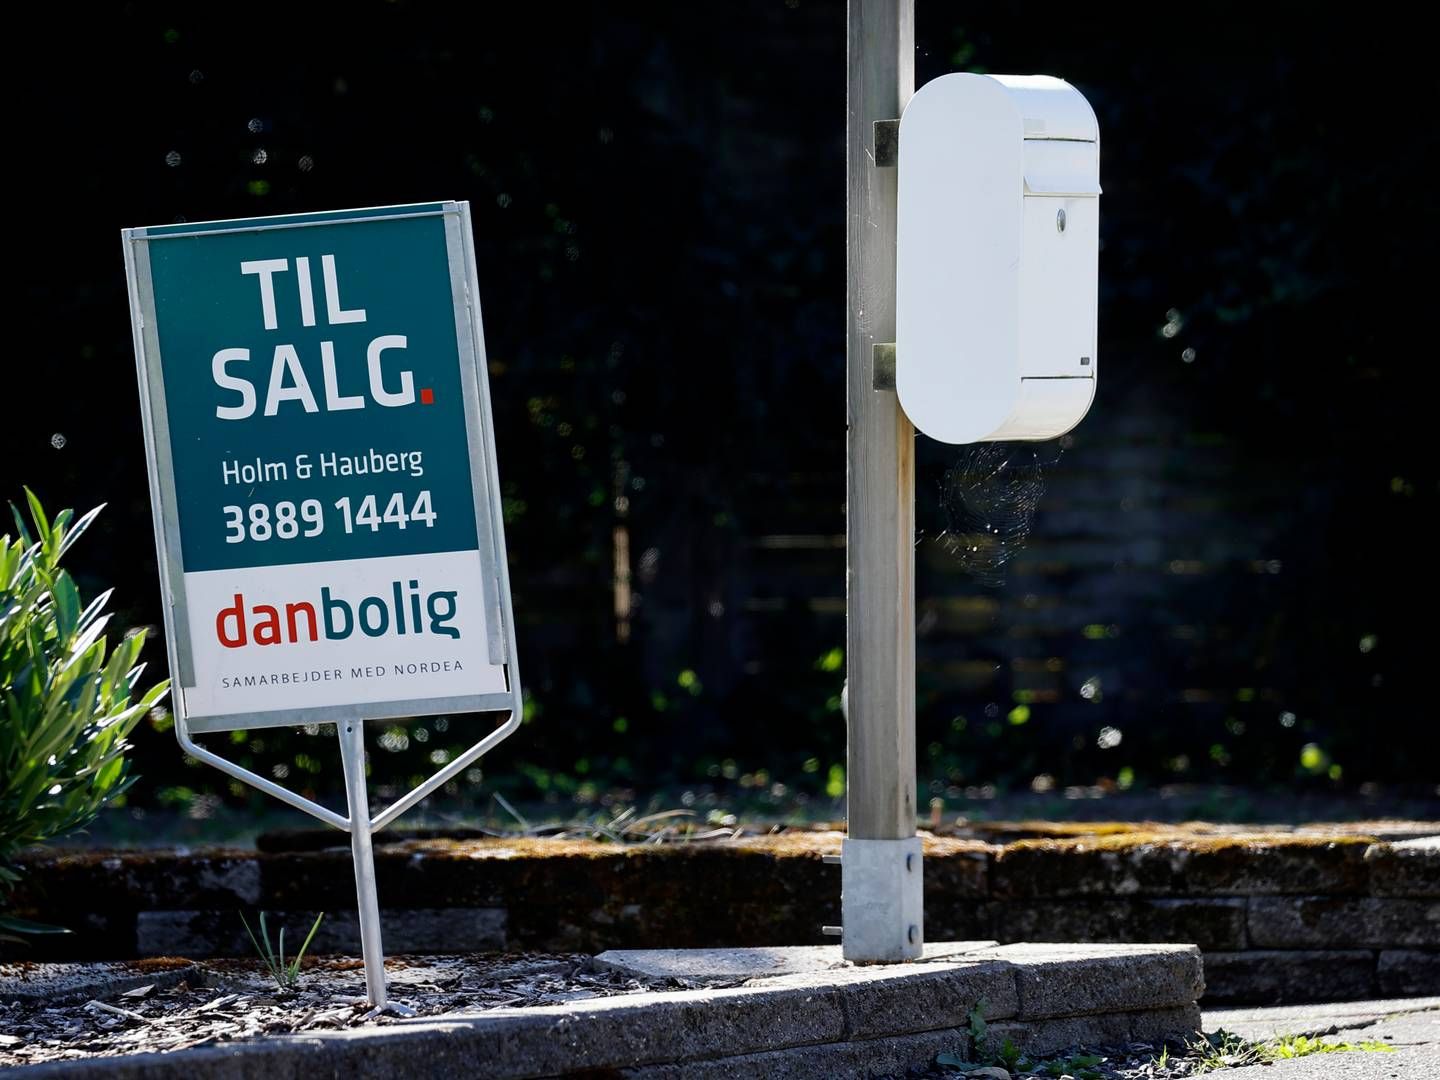 Antallet af boliger til salg falder igen en smule. | Foto: Jens Dresling